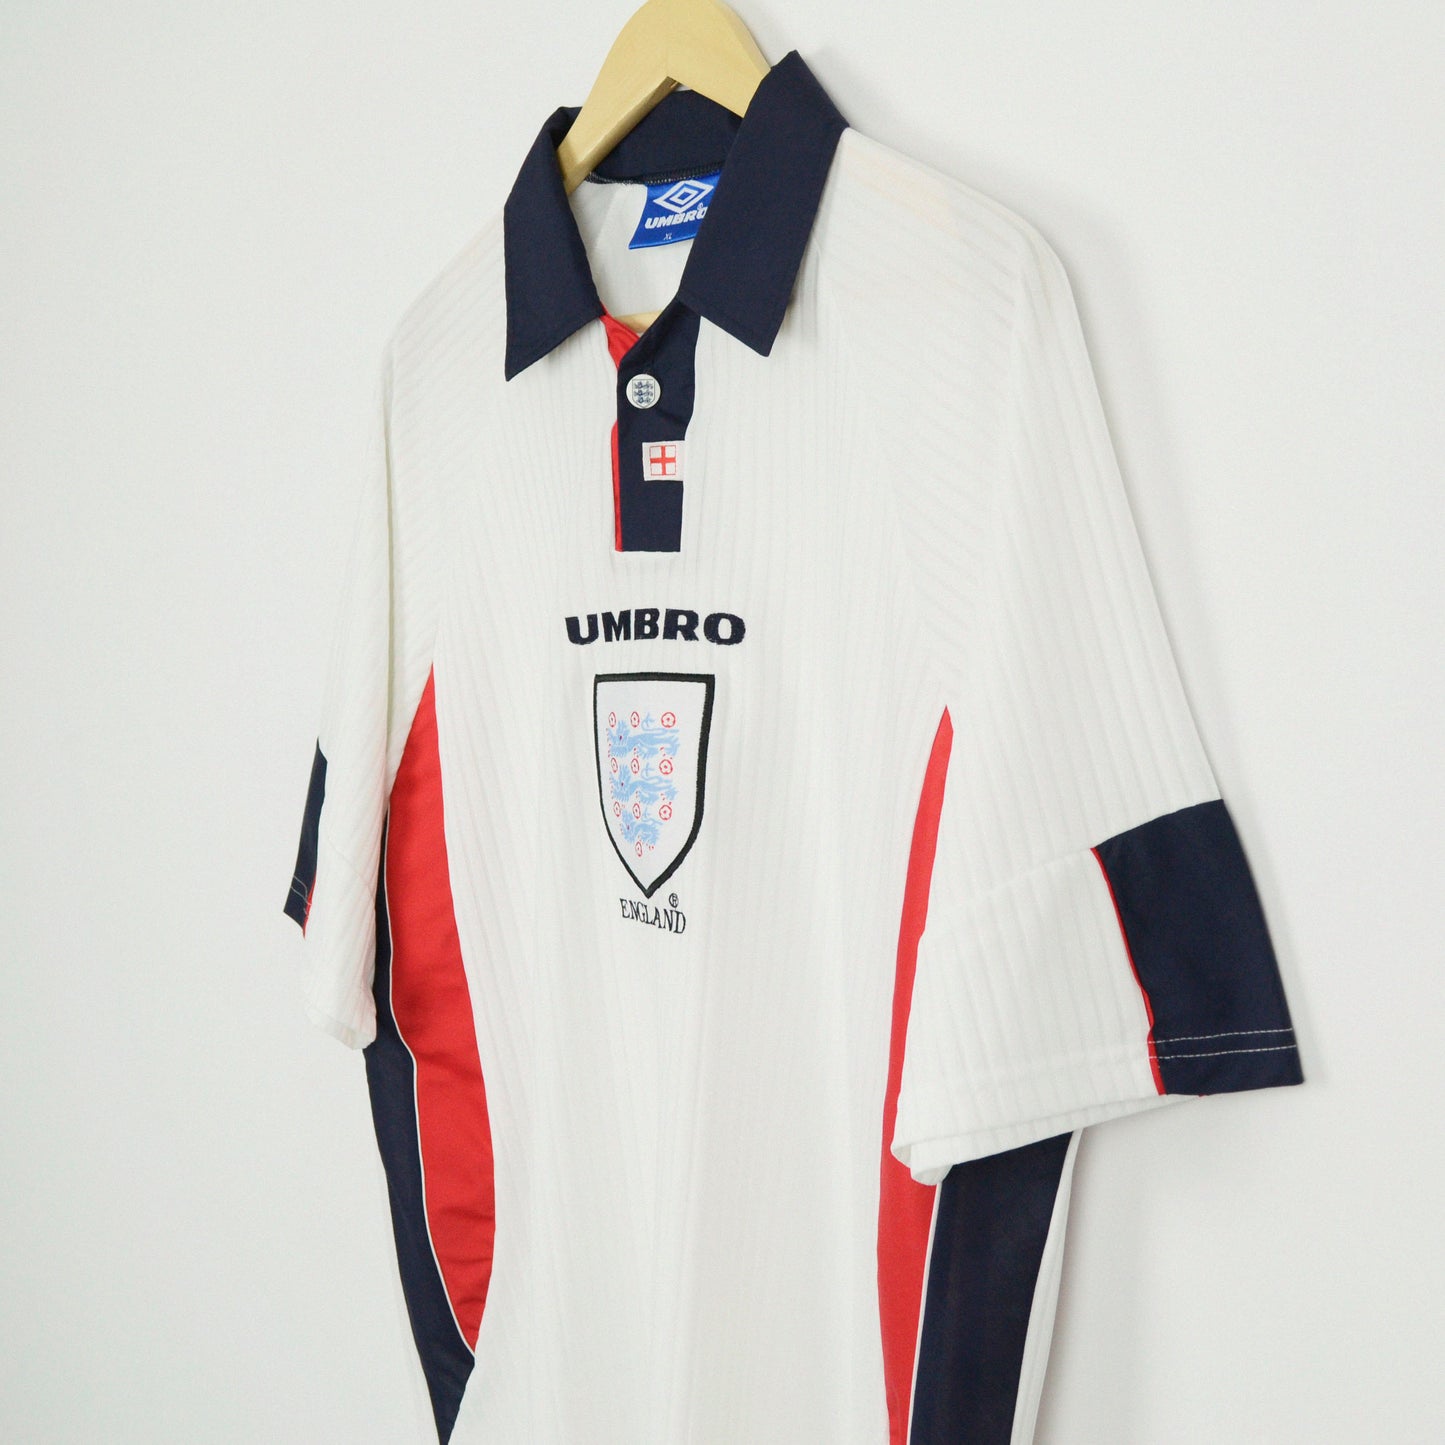 1997-98 Umbro England Home Shirt XL